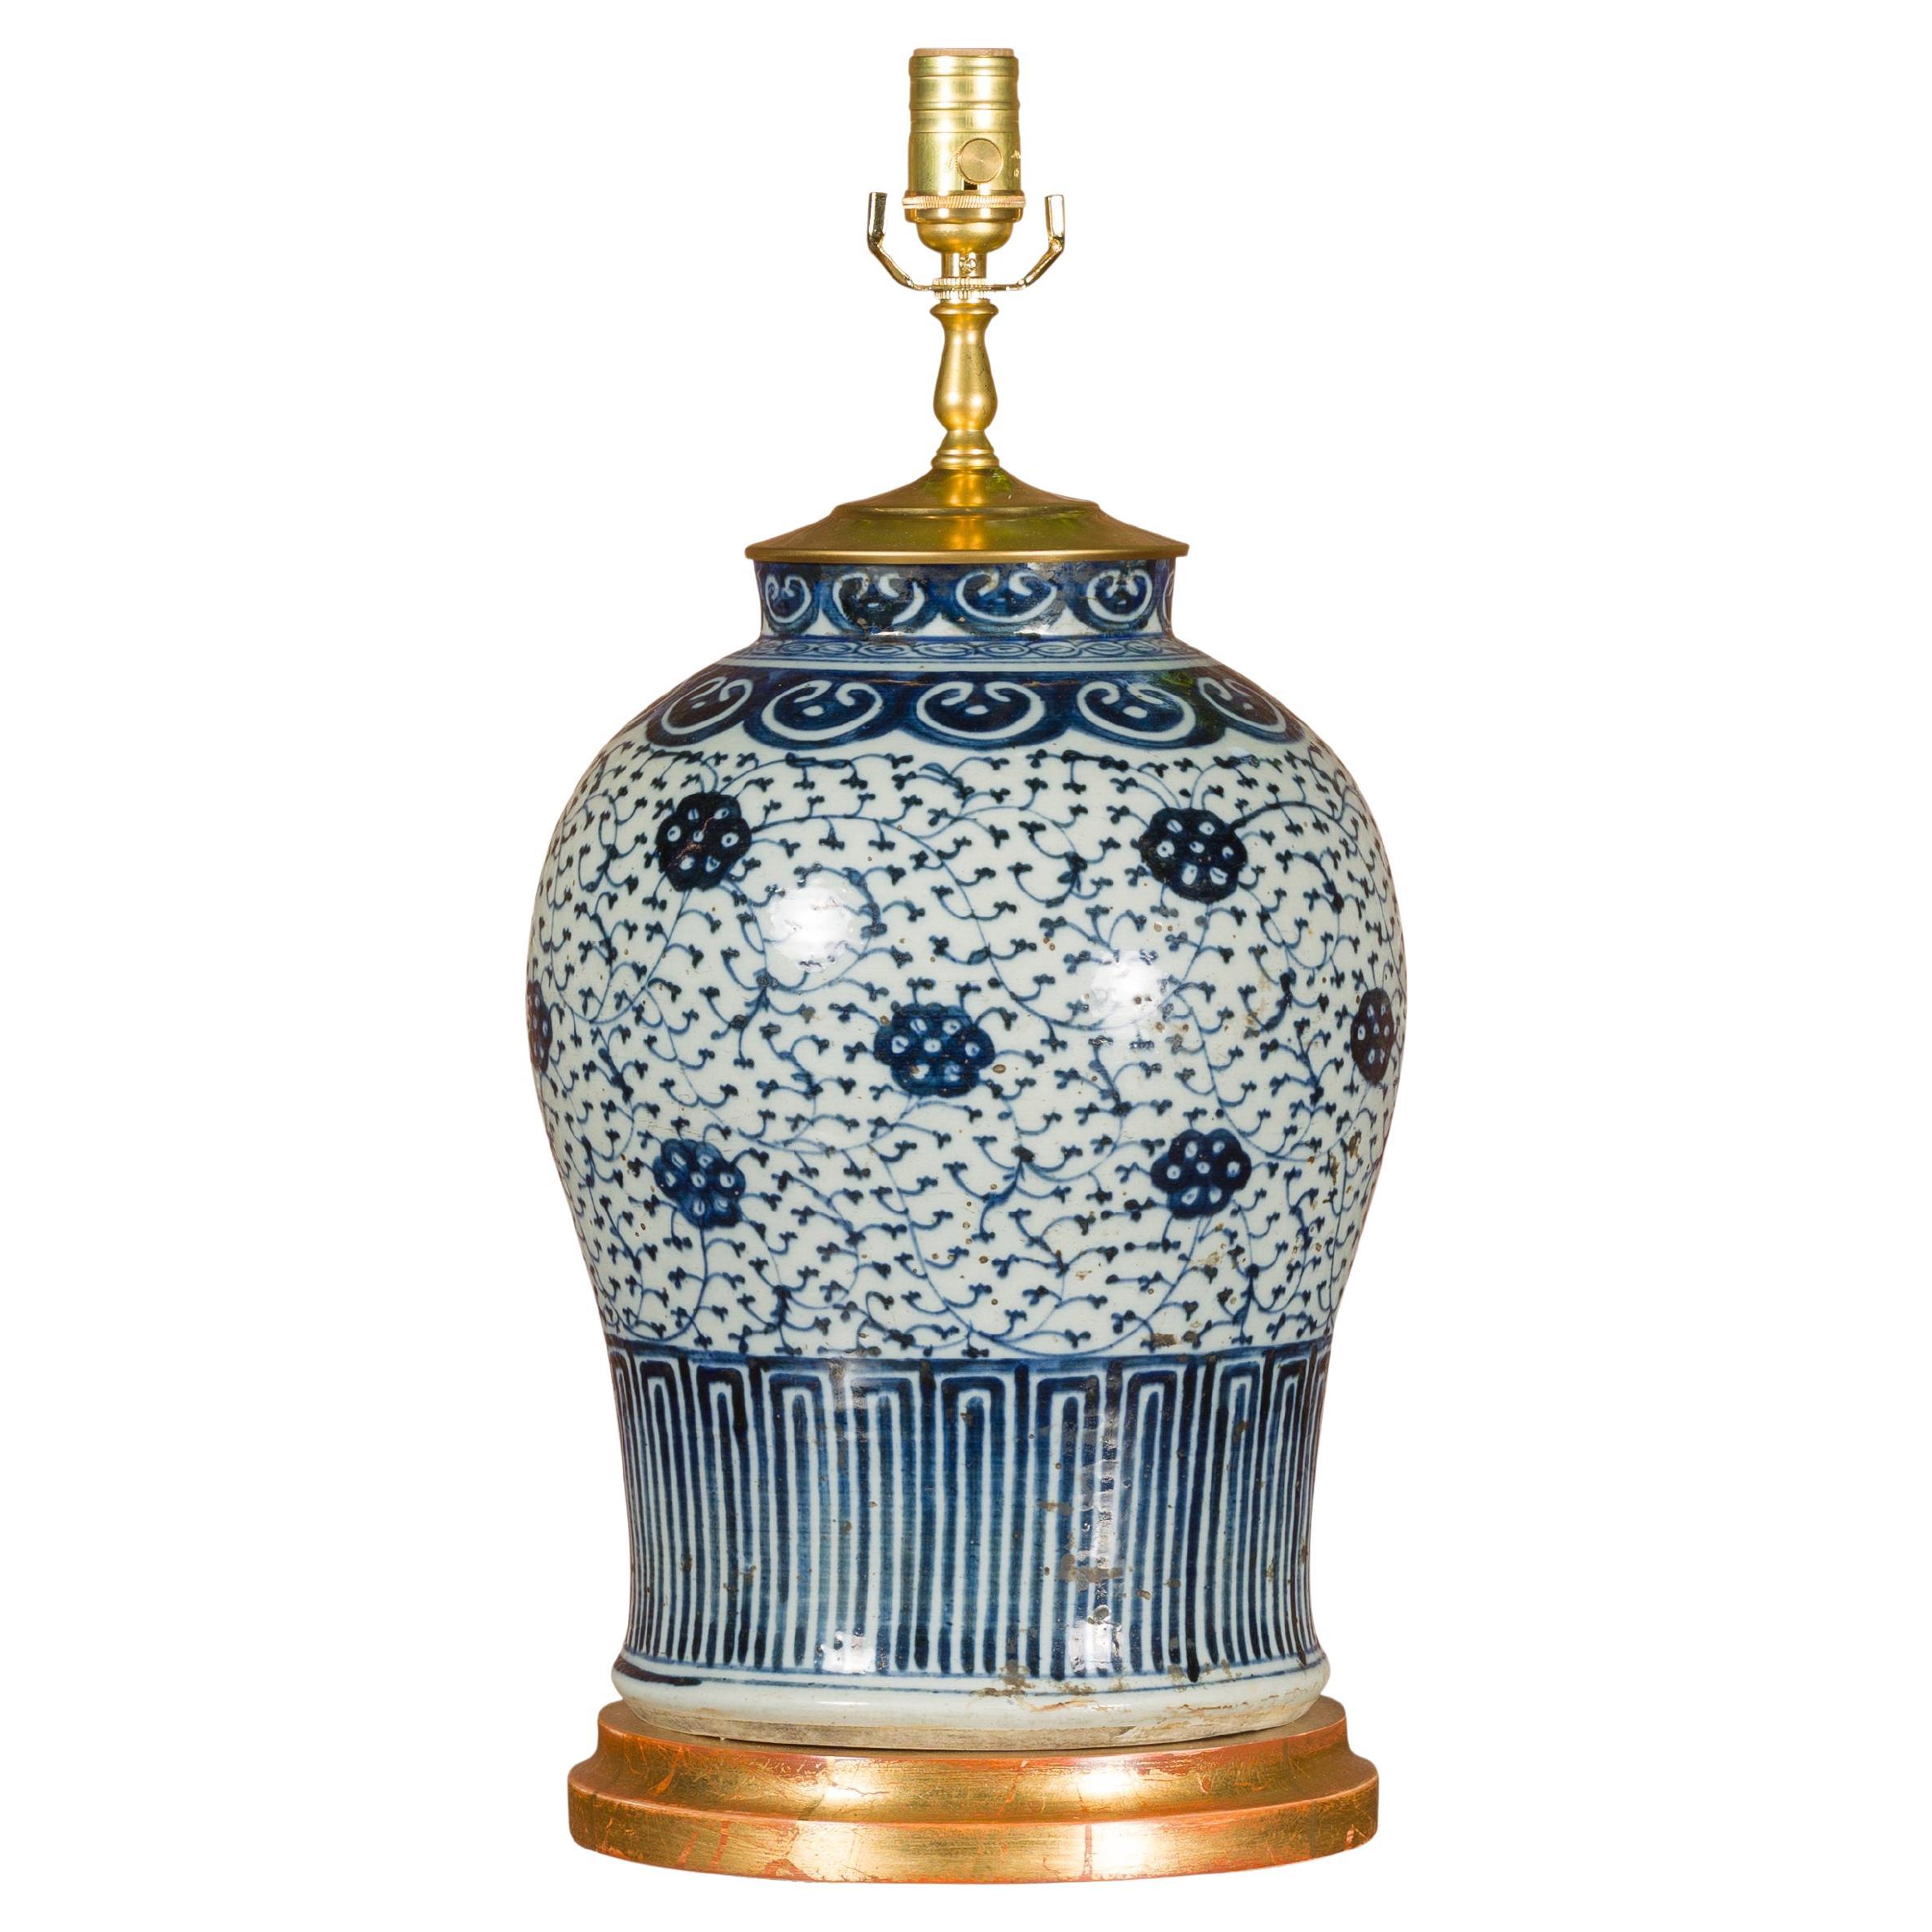 Blaue und weiße Delft-Porzellanvase aus dem 18. Jahrhundert, hergestellt als US-Tischlampe mit Kabel